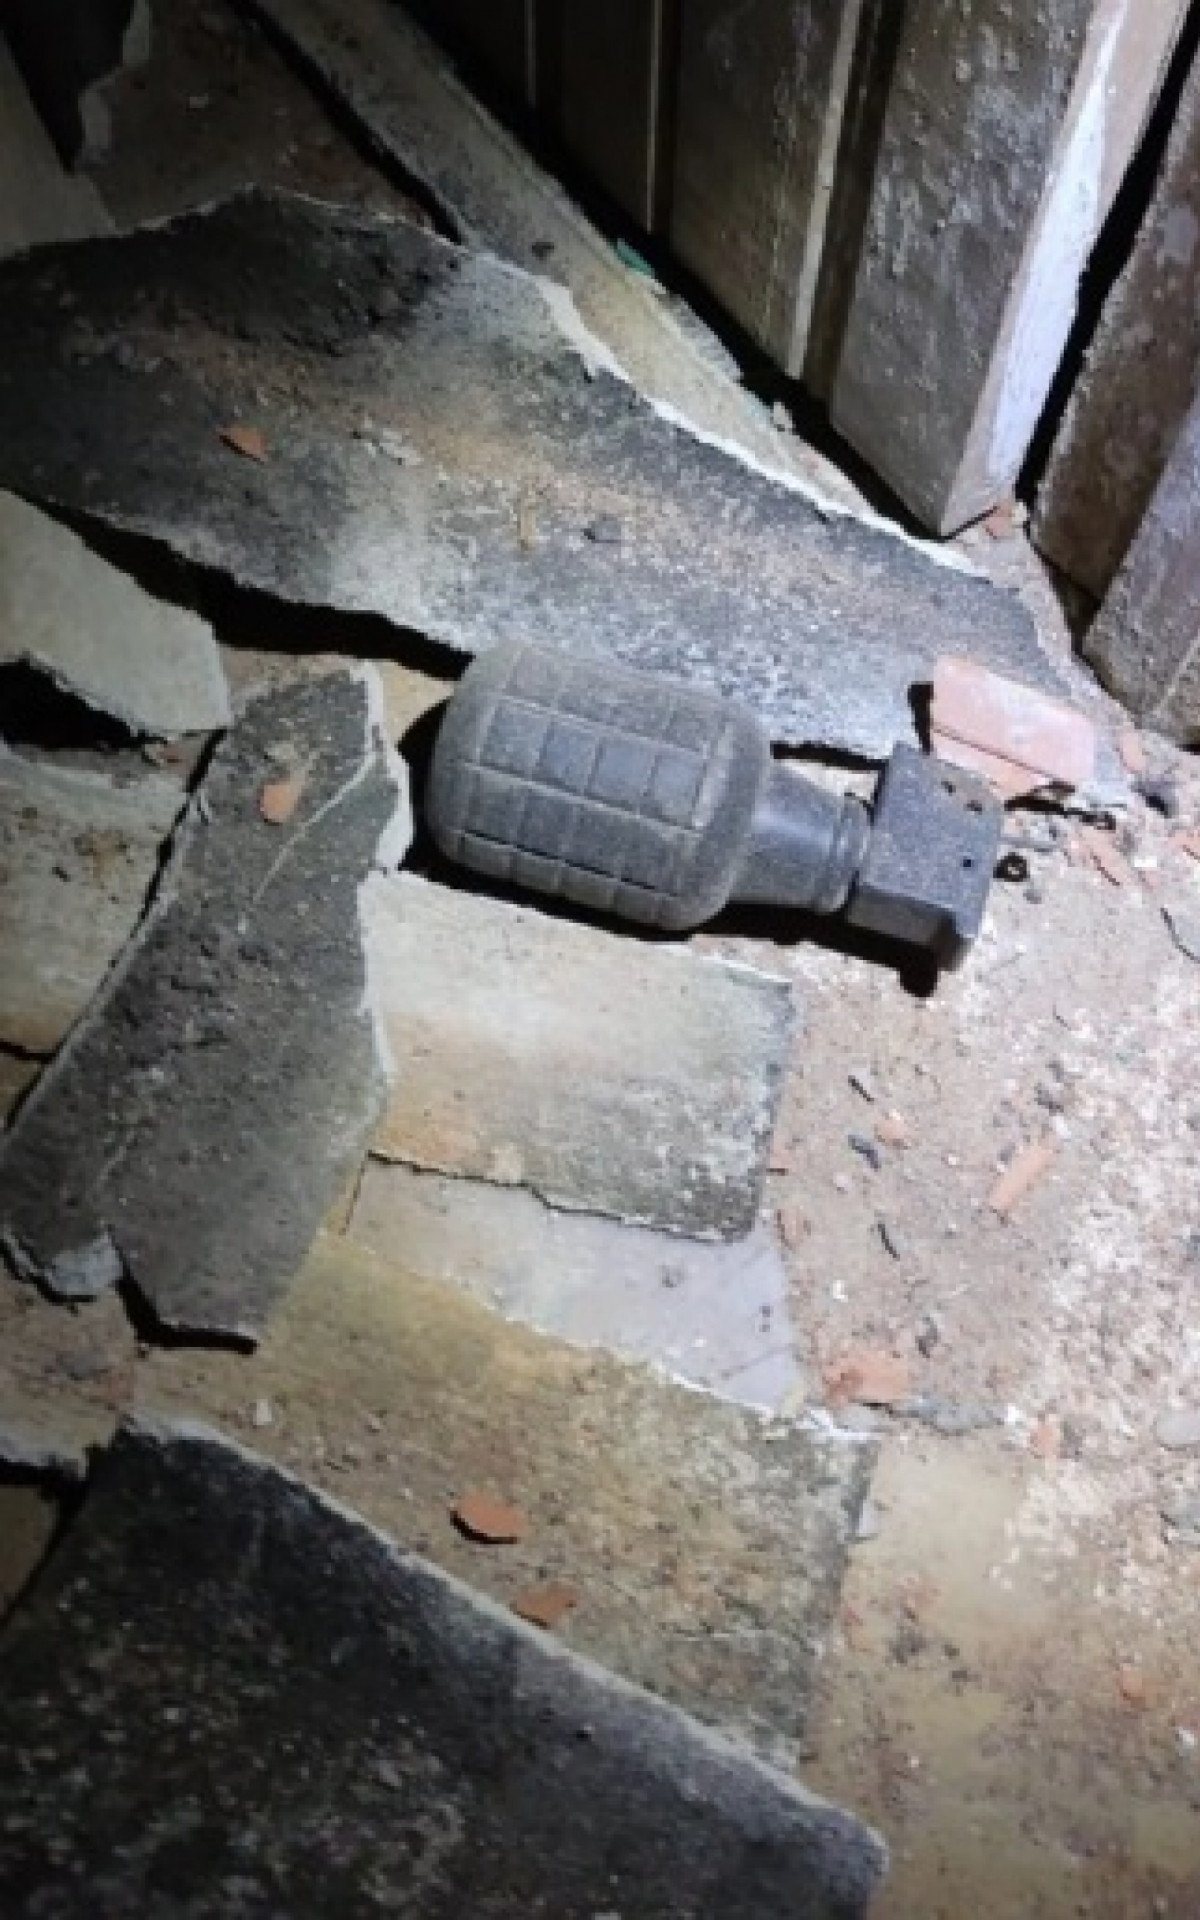 PMs encontraram granada na região de Barra do Itabapoana - Divulgação